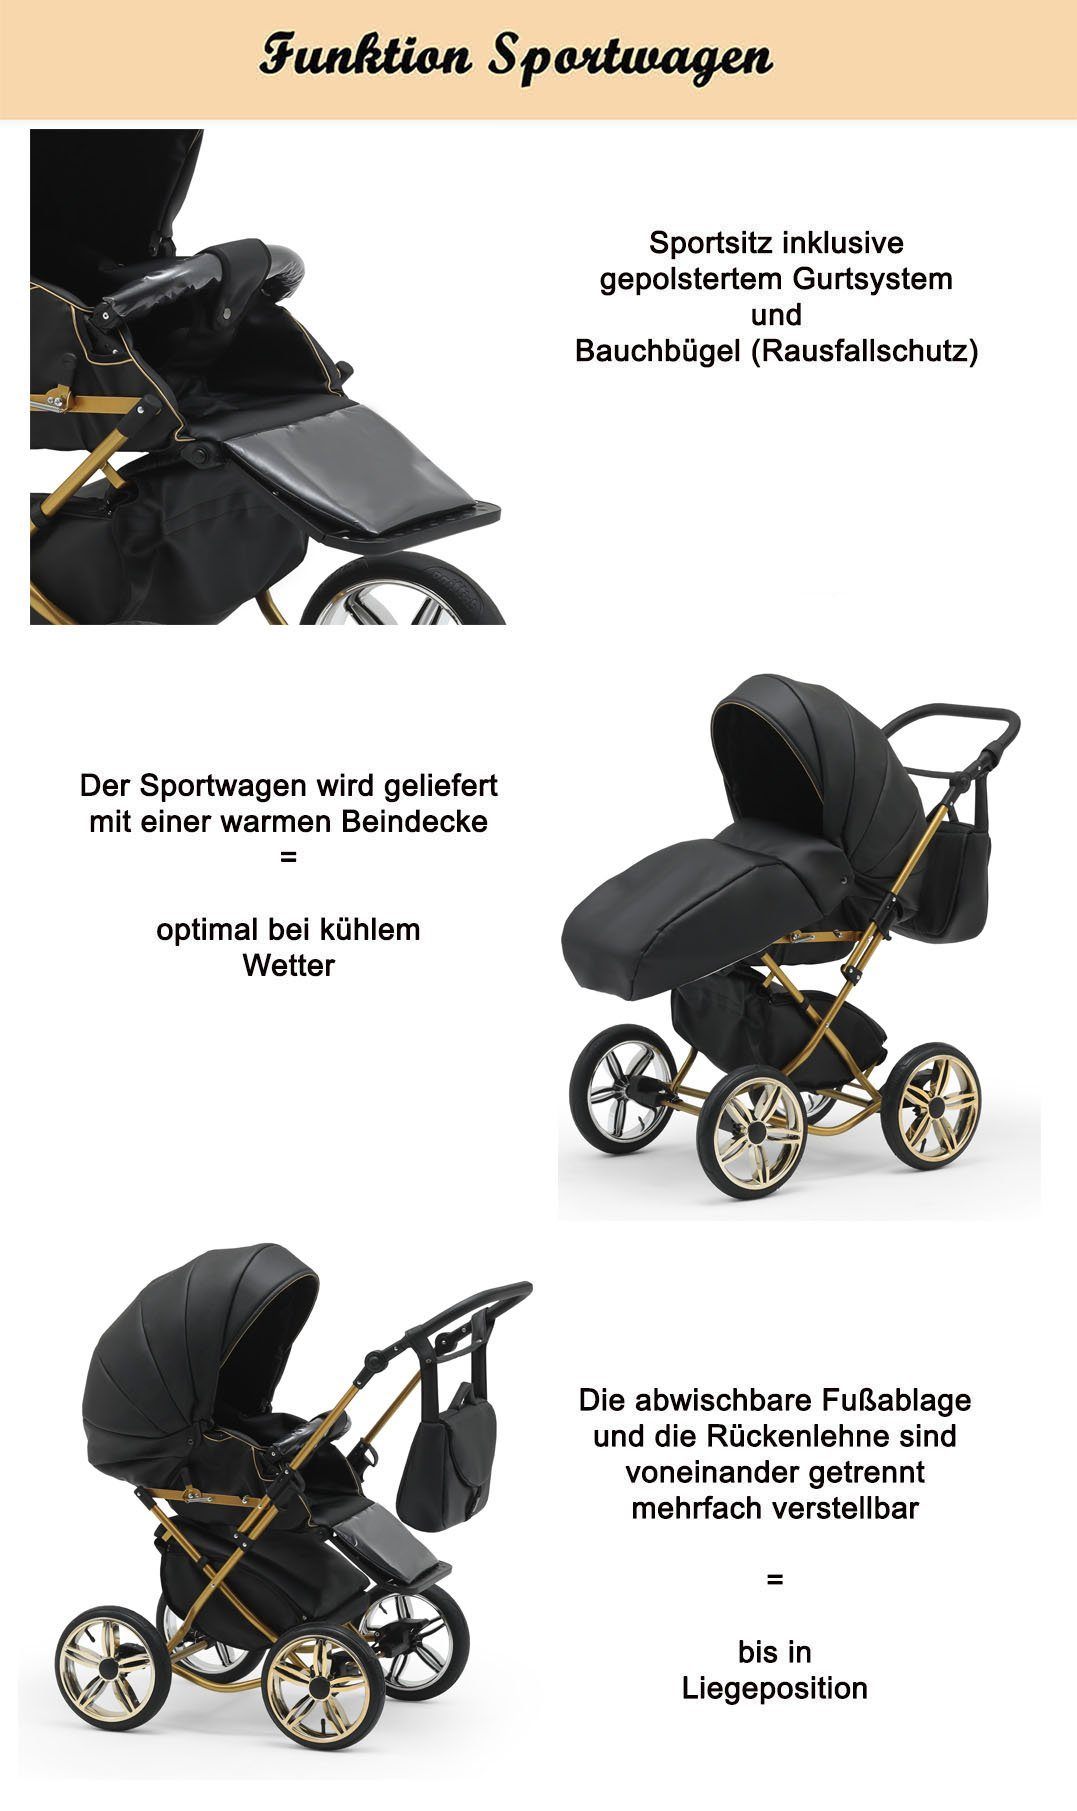 bis Rosa-Weiß 11 Teile 30 Geburt 2 - 4 - Kombi-Kinderwagen Jahre 1 Sorento babies-on-wheels in Designs von in